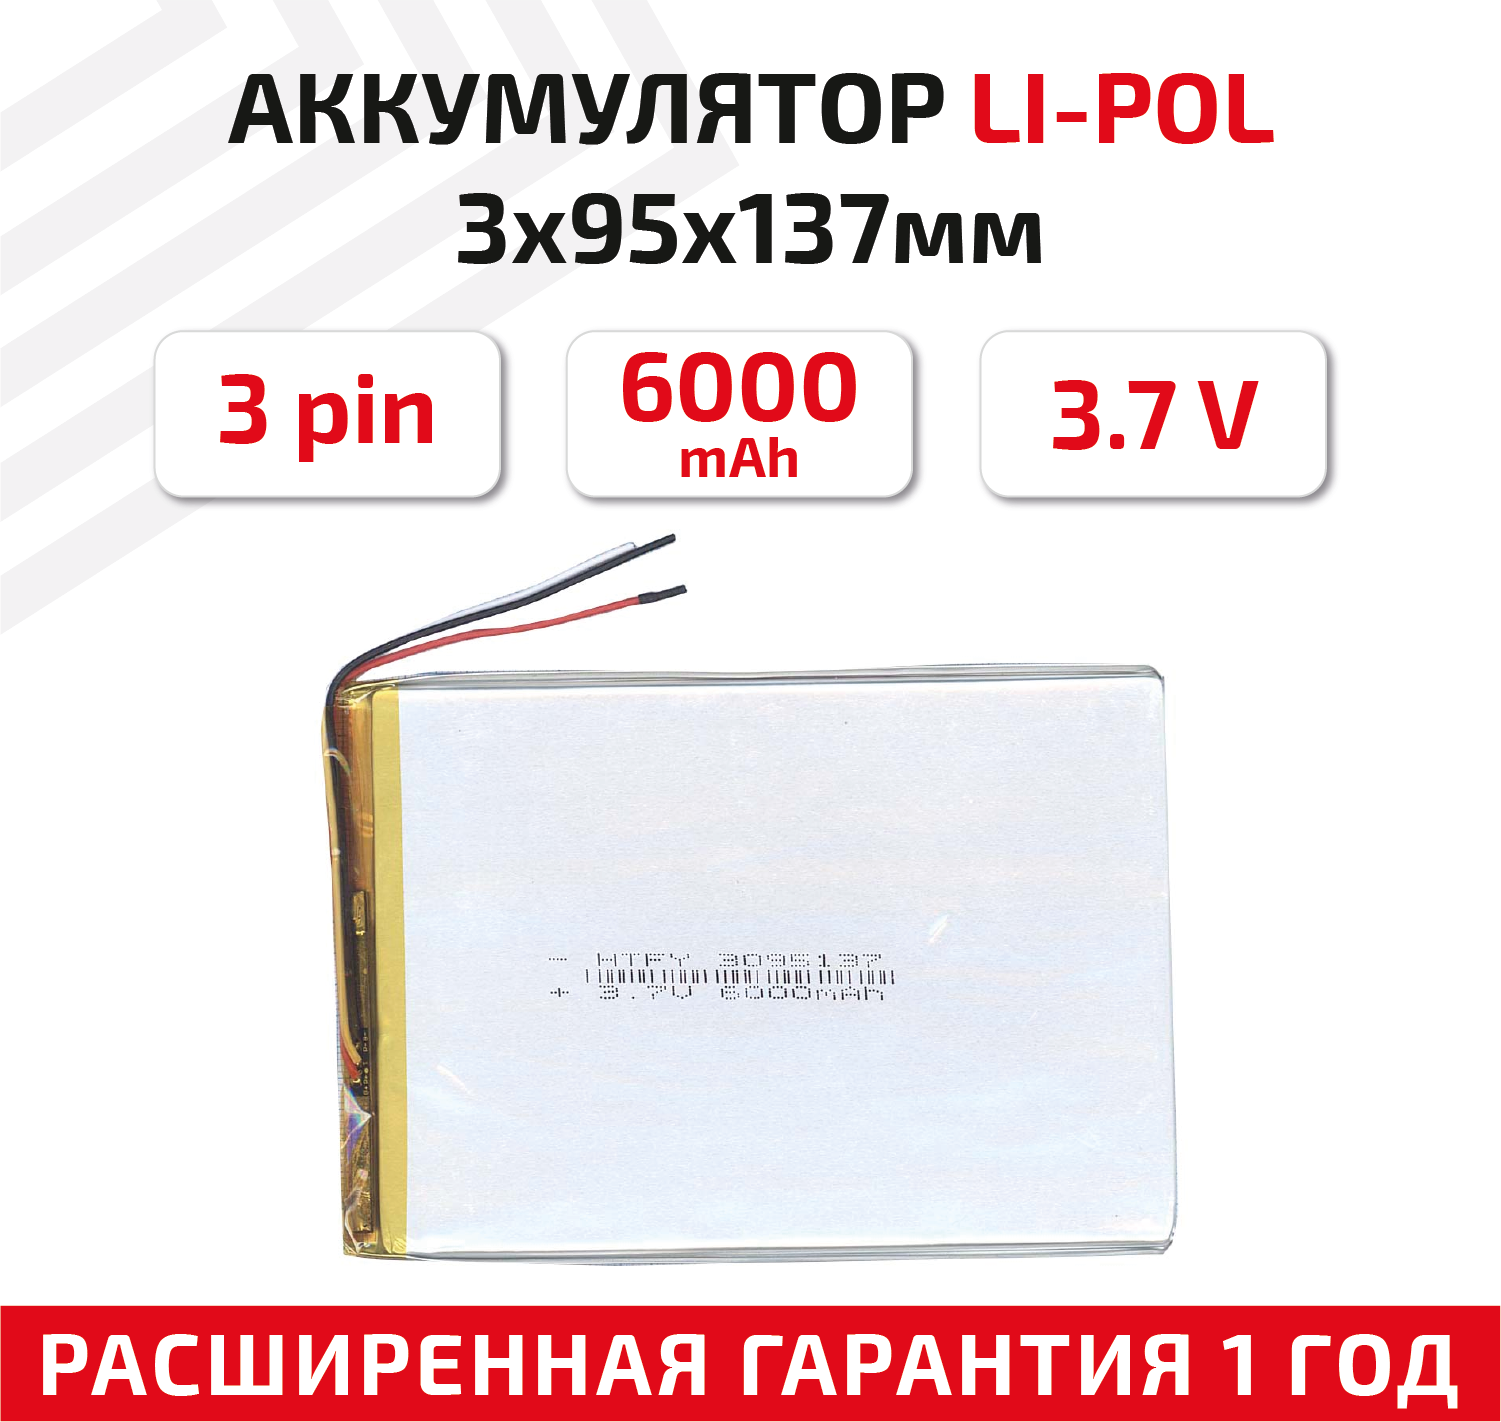 Универсальный аккумулятор (АКБ) для планшета, видеорегистратора и др, 3х95х137мм, 6000мАч, 3.7В, Li-Pol, 3-pin (на 3 провода)